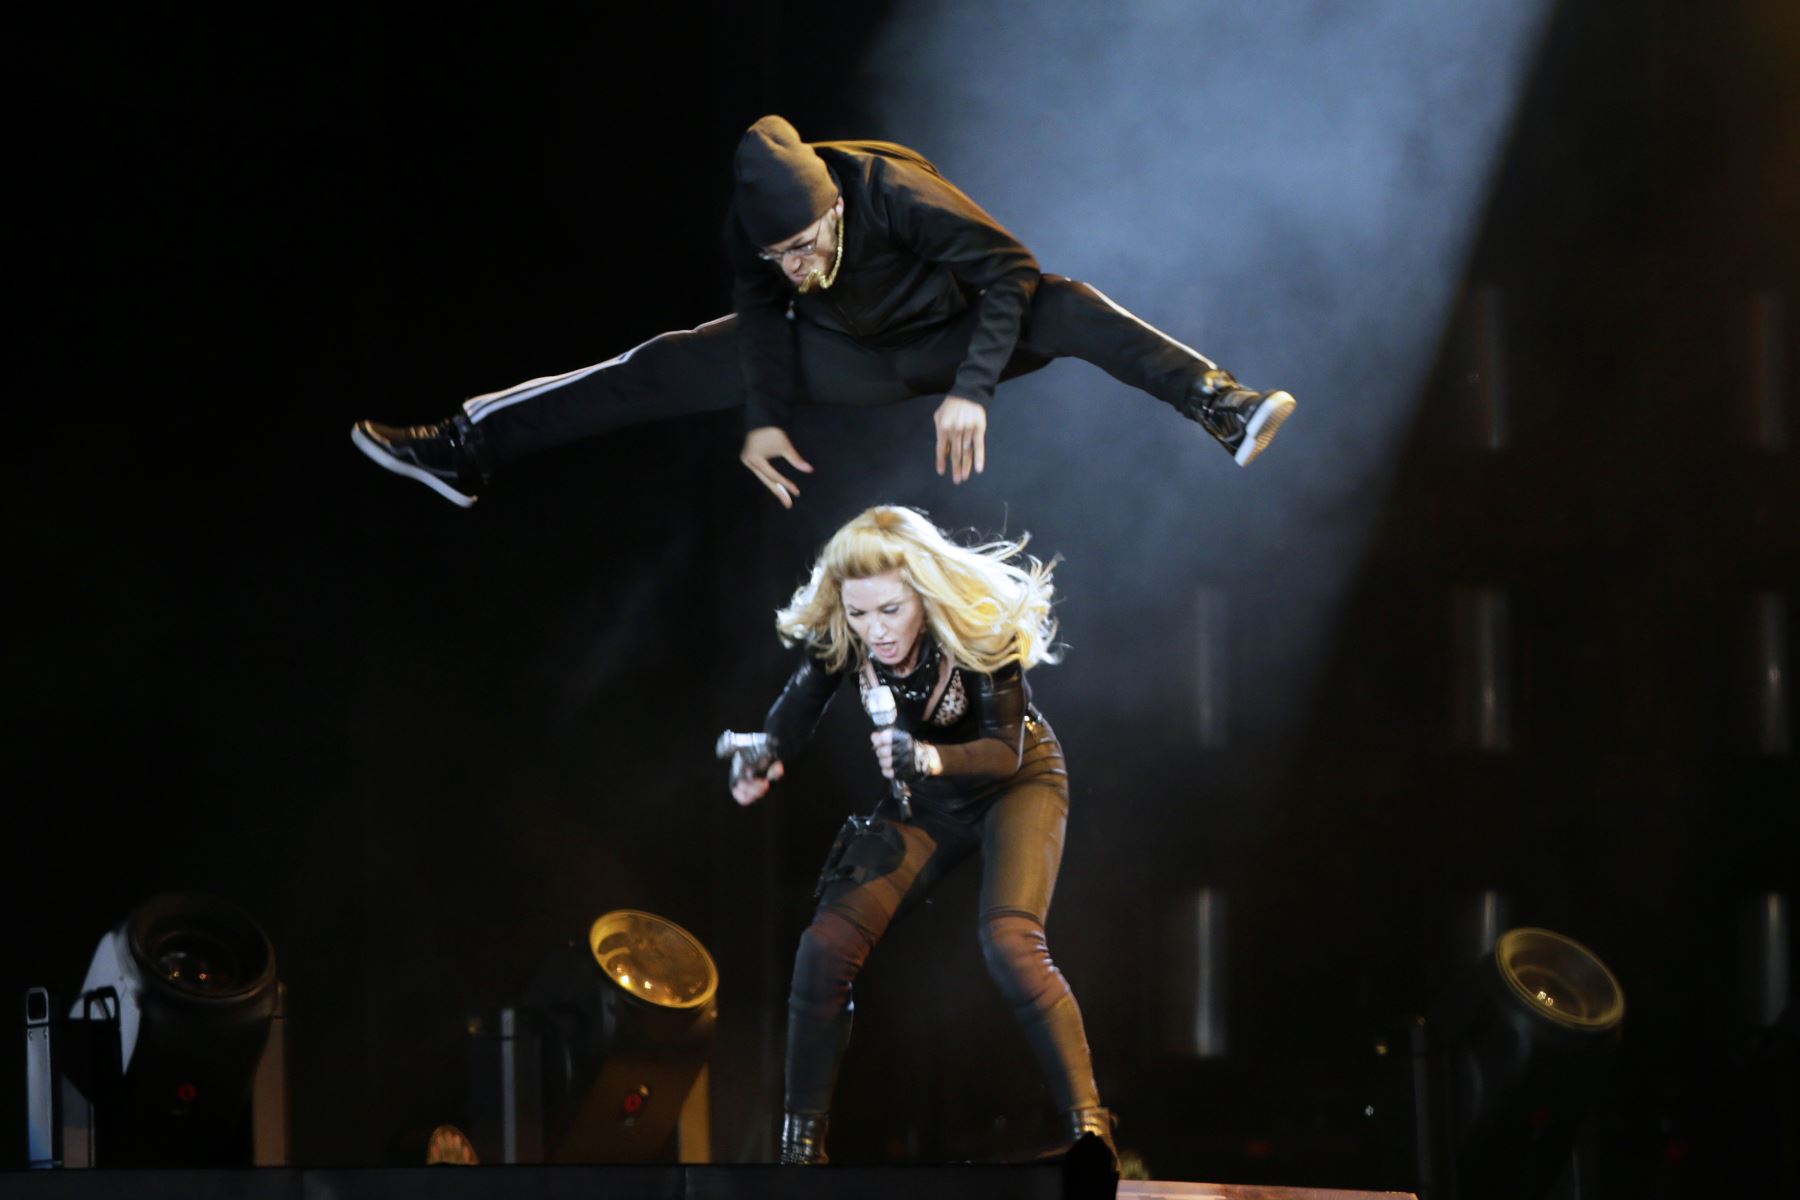 La cantante estadounidense Madonna se presenta en el escenario en el Stade de France en Saint-Denis, un suburbio de París, el 14 de julio de 2012, durante su gira mundial de MDNA. AFP